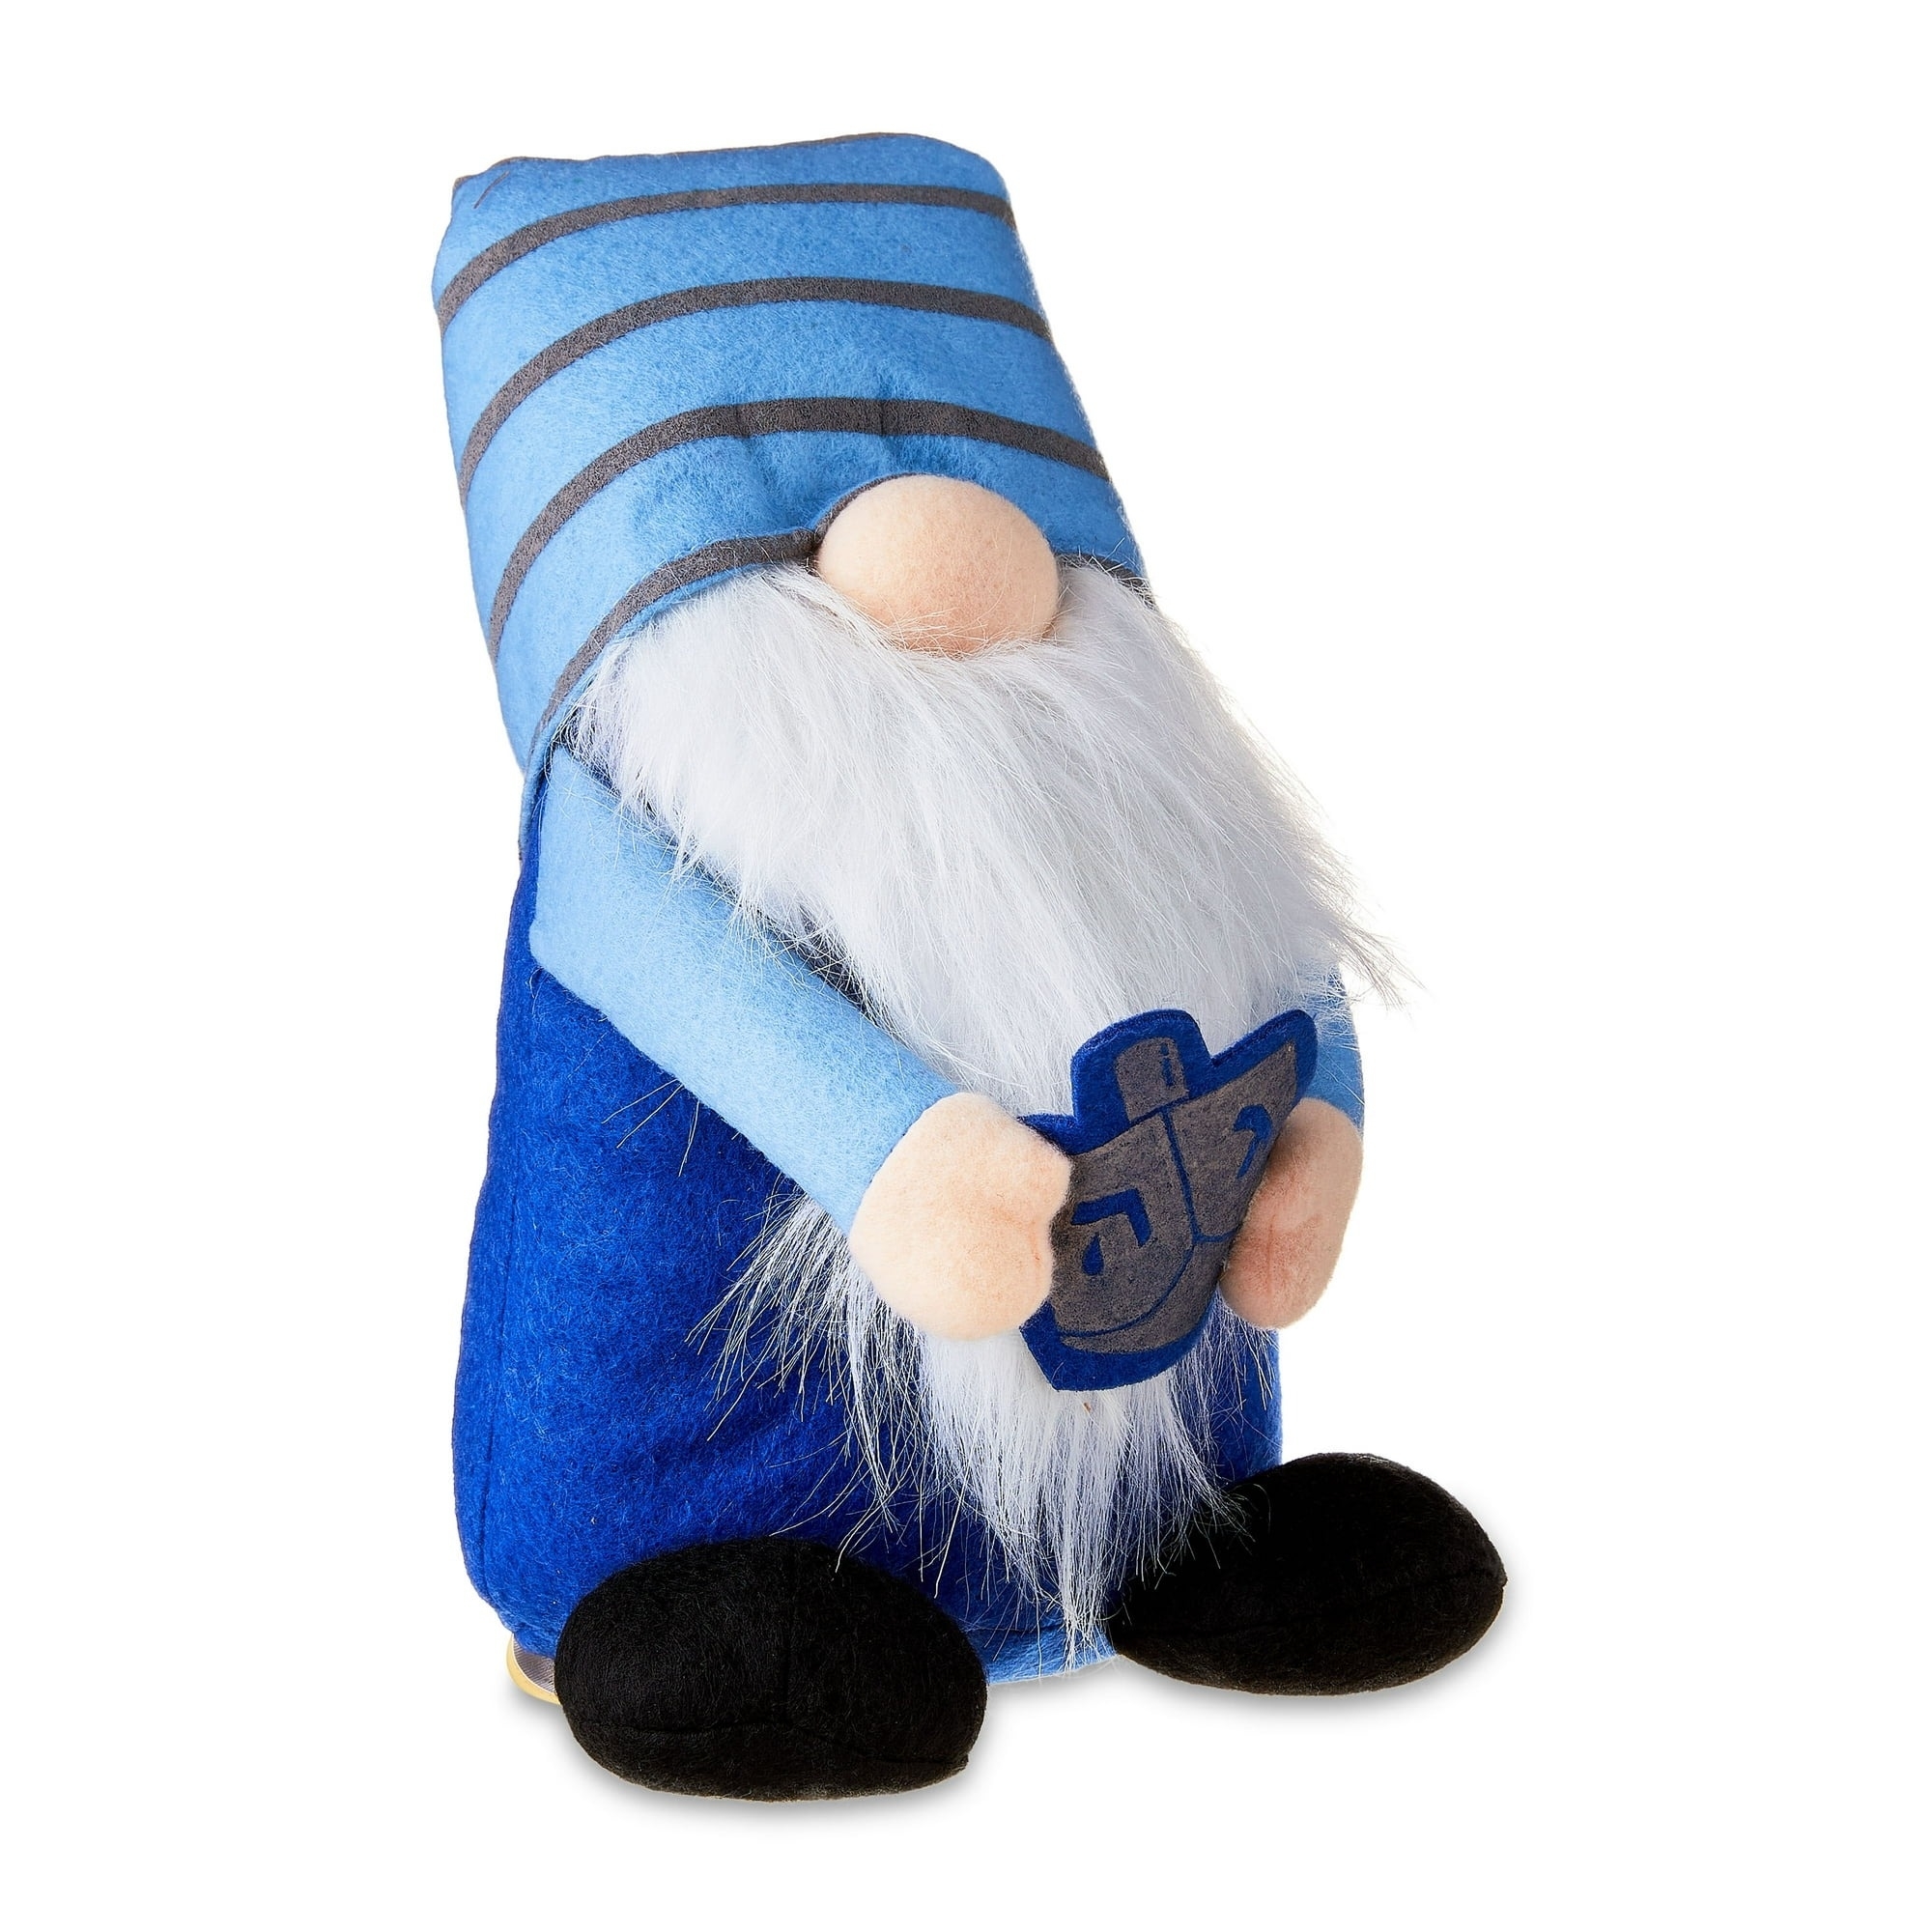 the blue gnome holding a dreidel